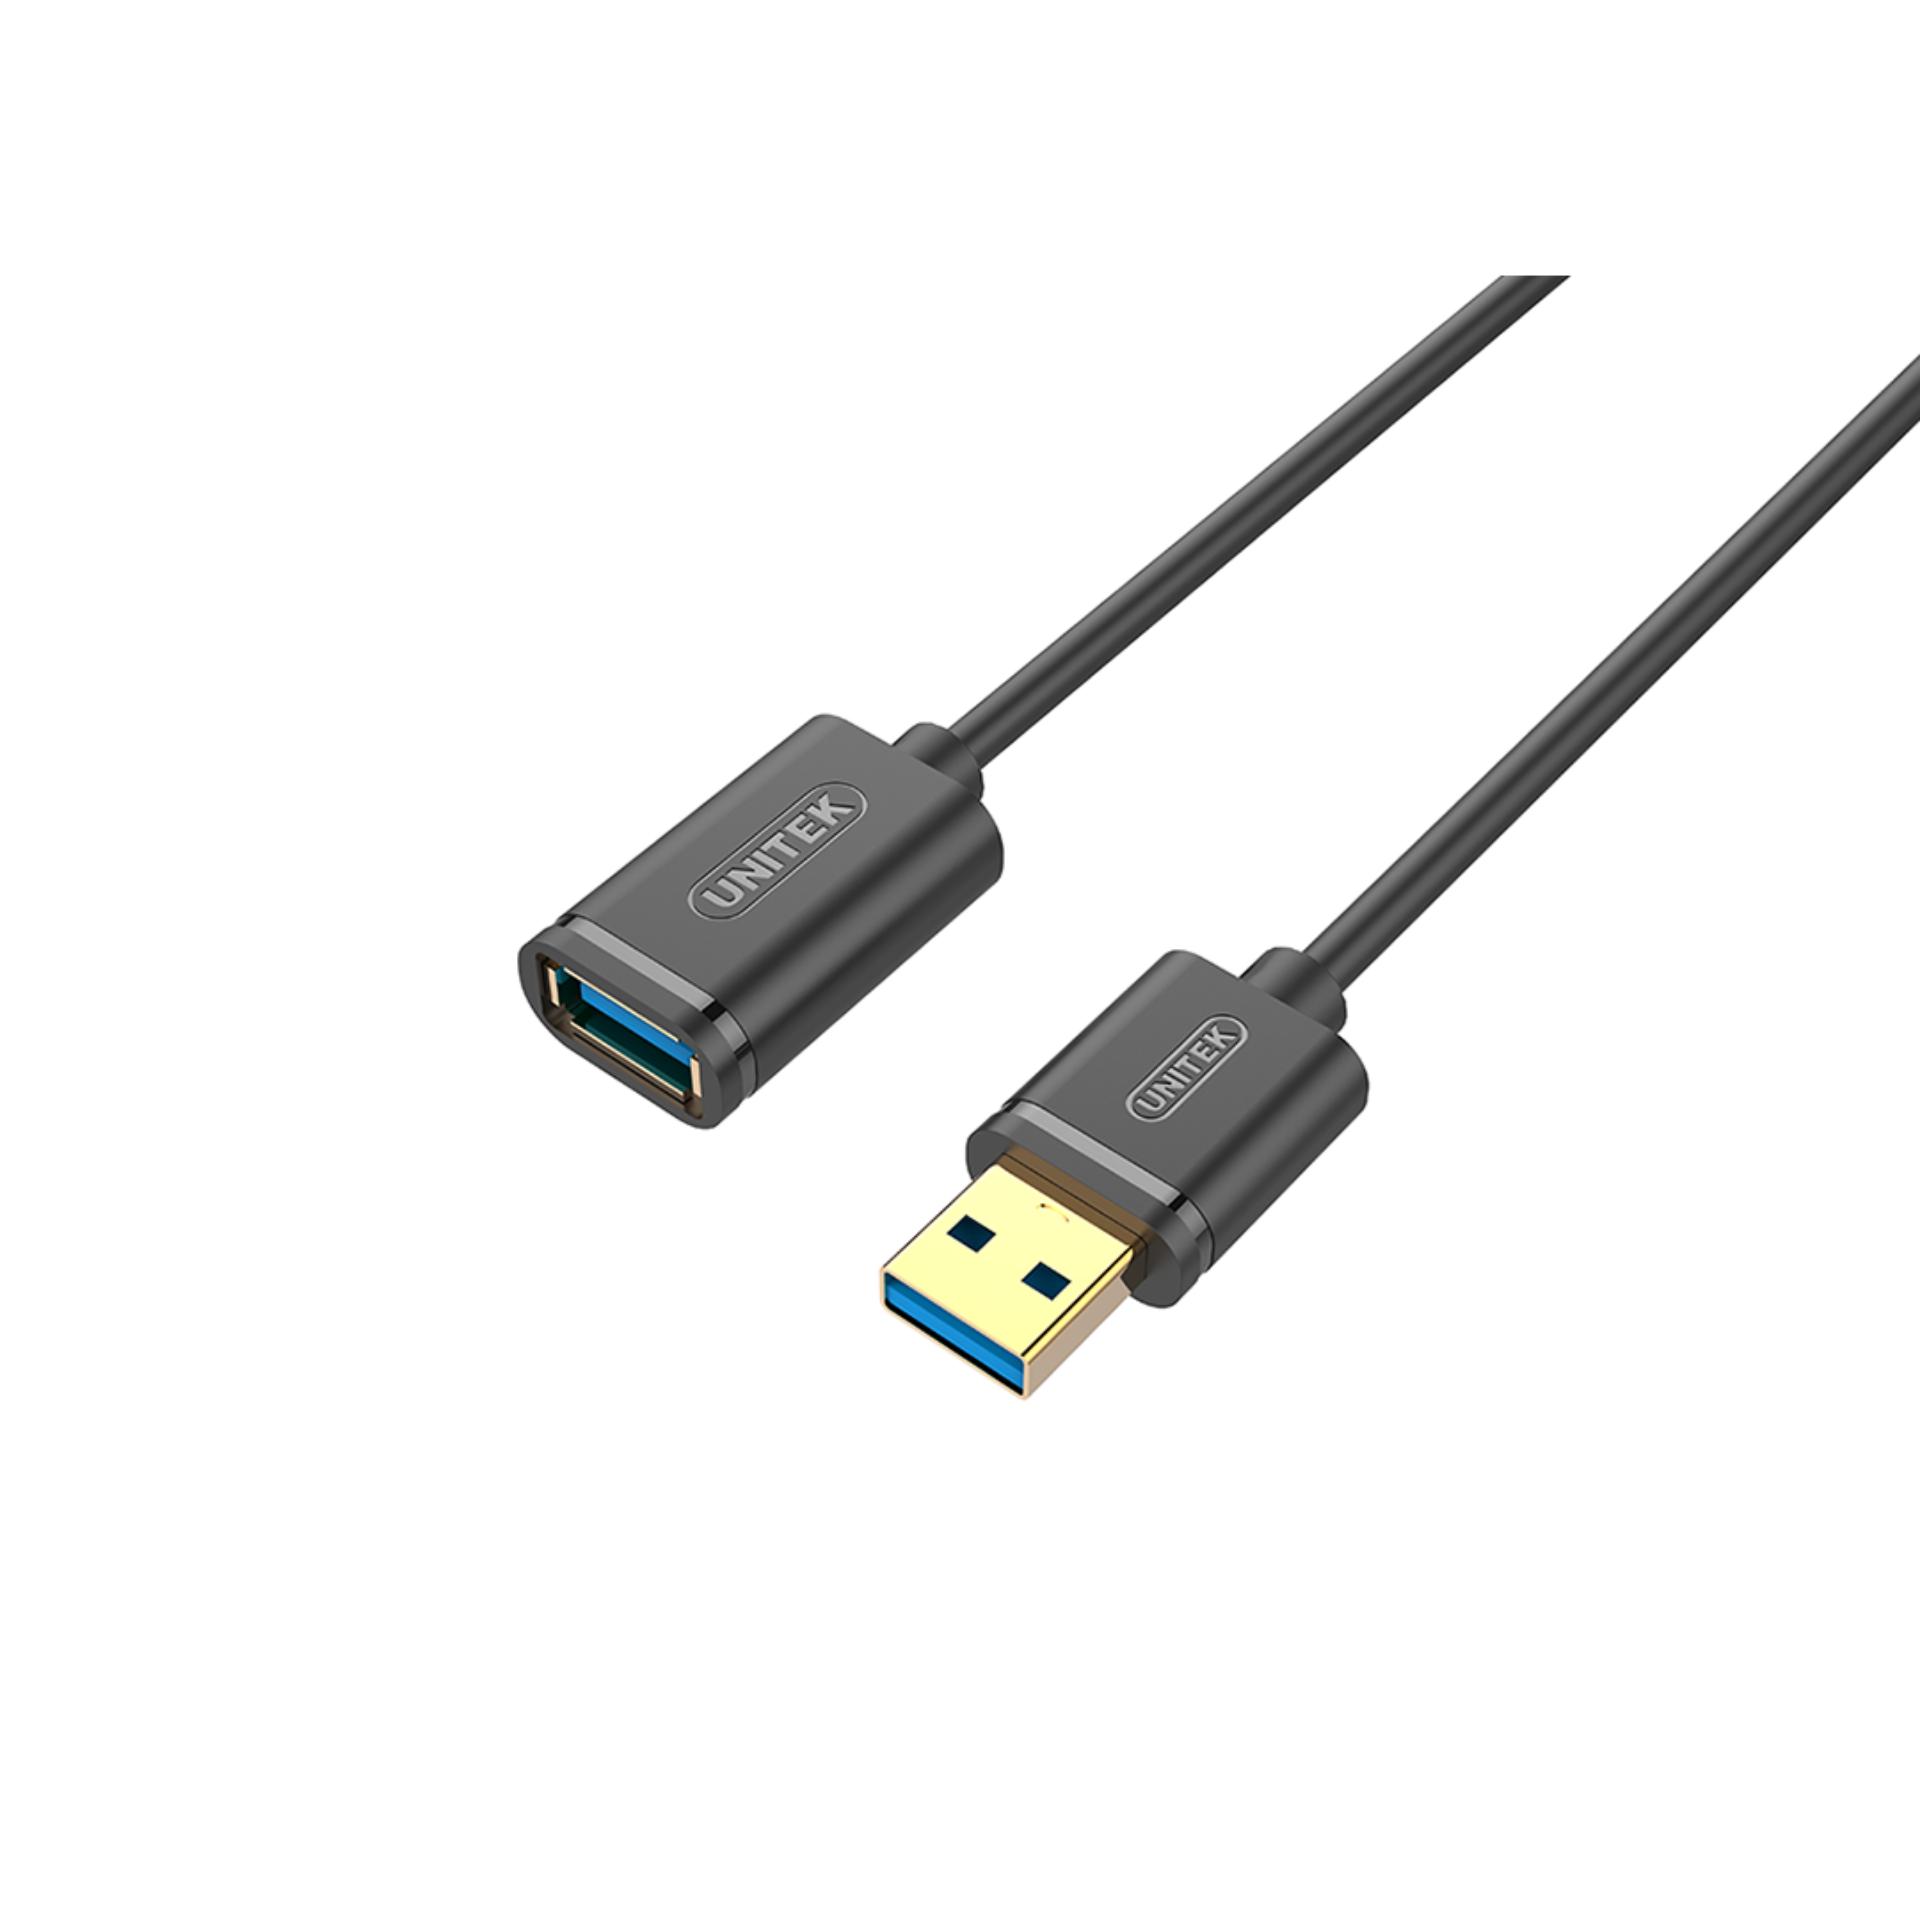 Cáp USB nối dài 2.0 Unitek Y-C 449GBK - dài 1.5m (Đen) - Hãng phân phối chính thức